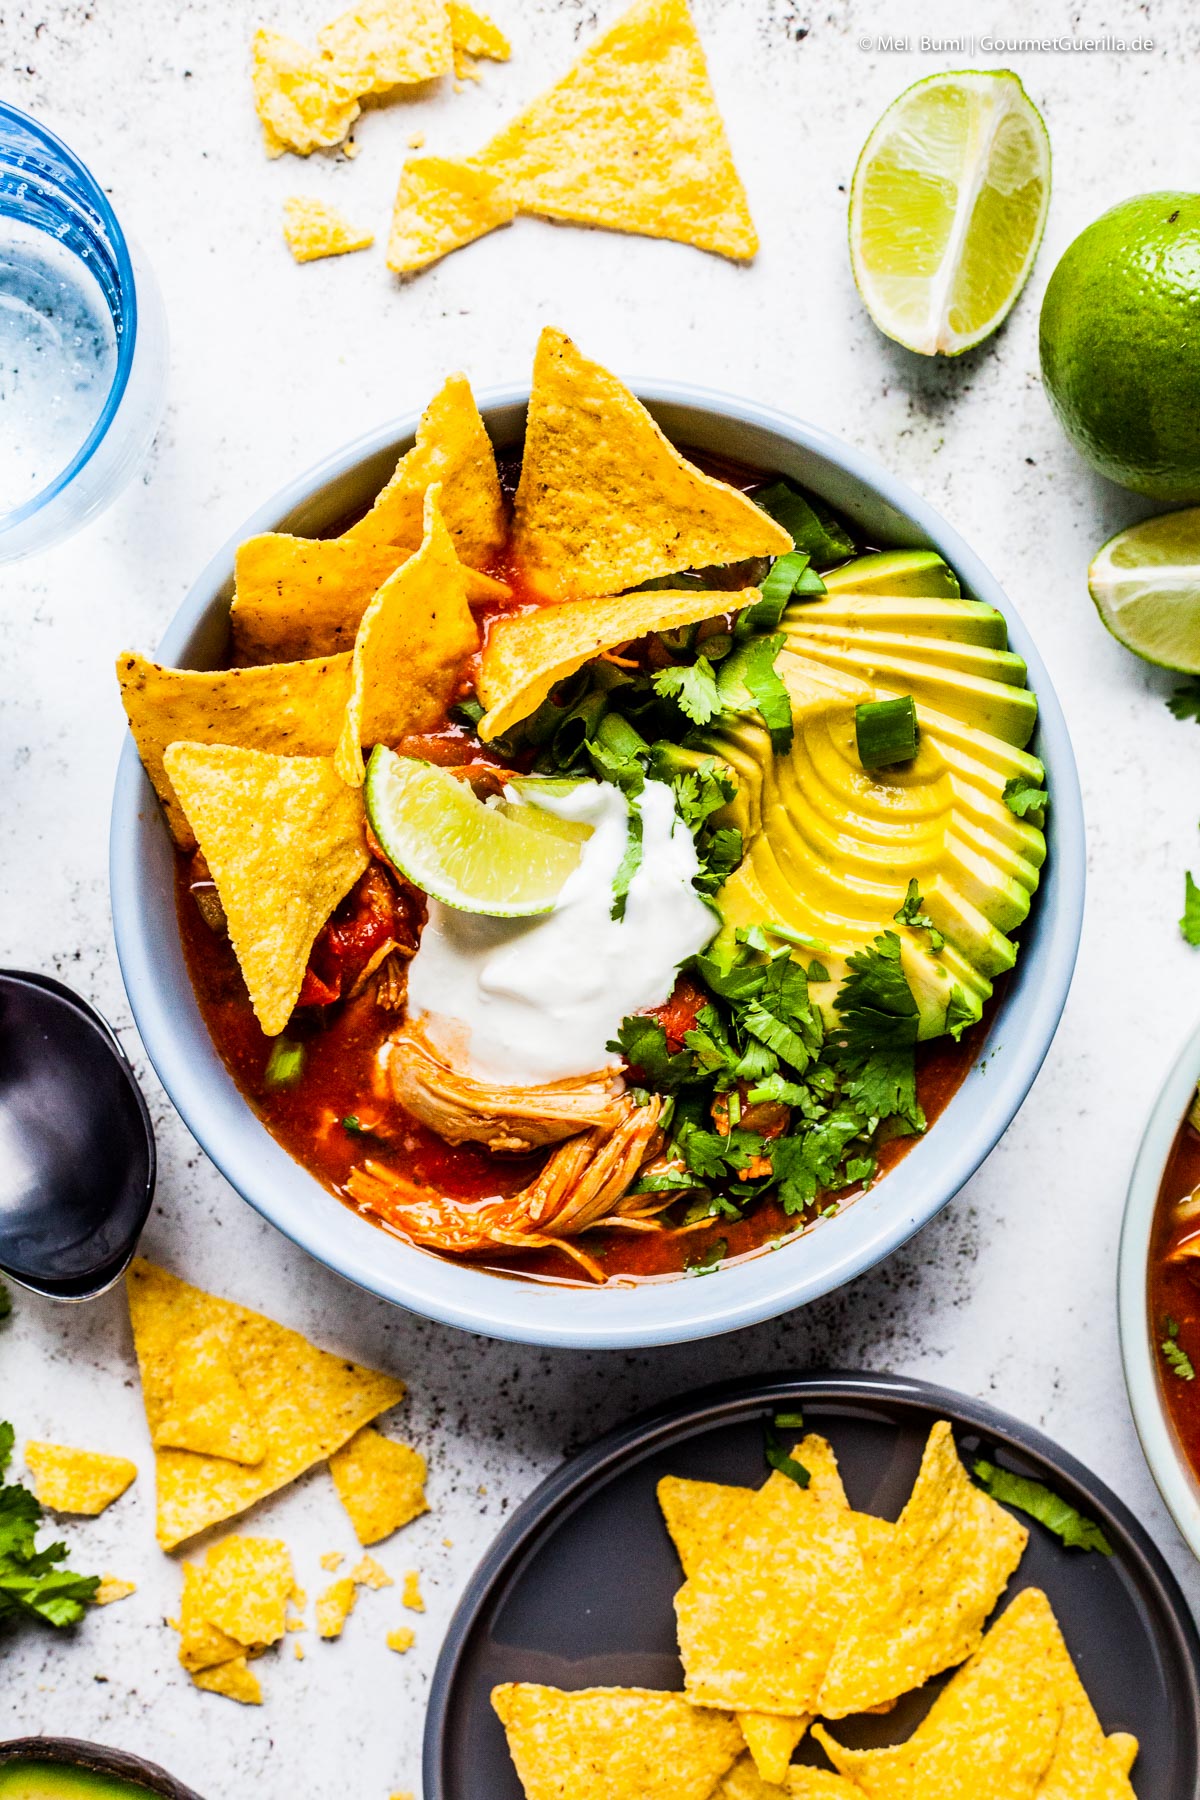 Mexican tortilla soup with avocado and chipotle | GourmetGuerilla.com